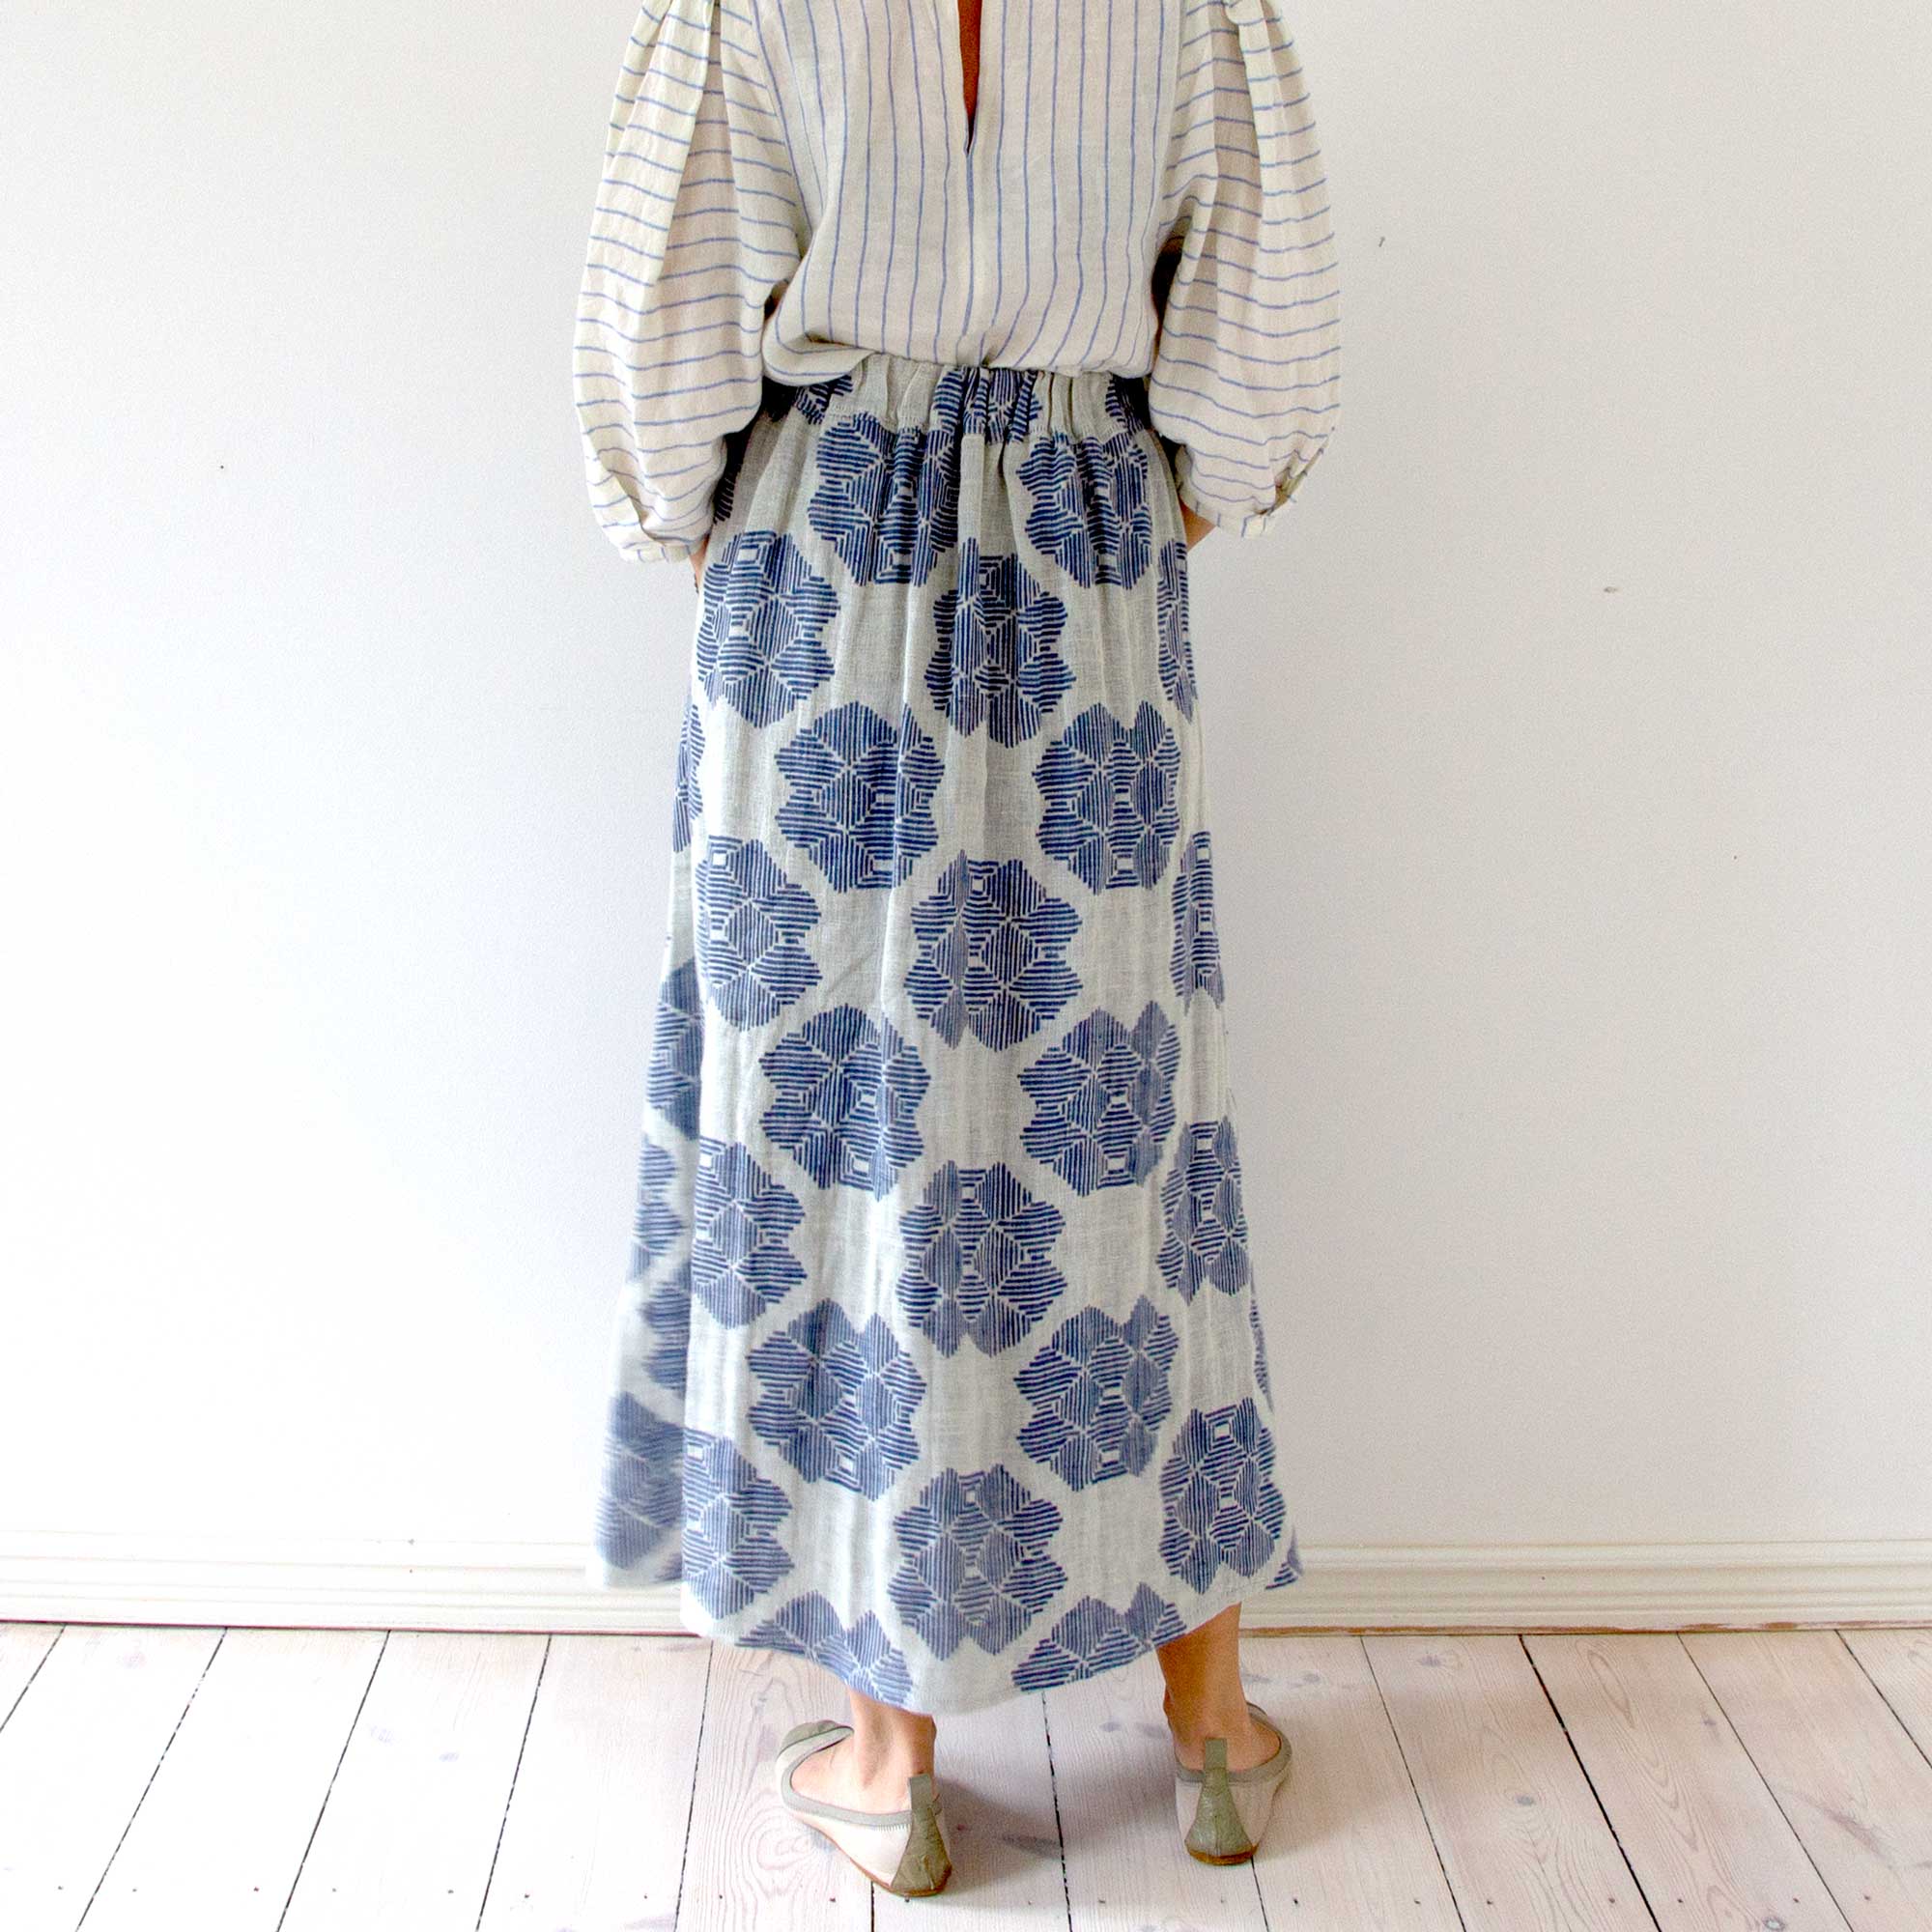 Skirt, pure linen, Desert roses pattern, design by Anne Rosenberg